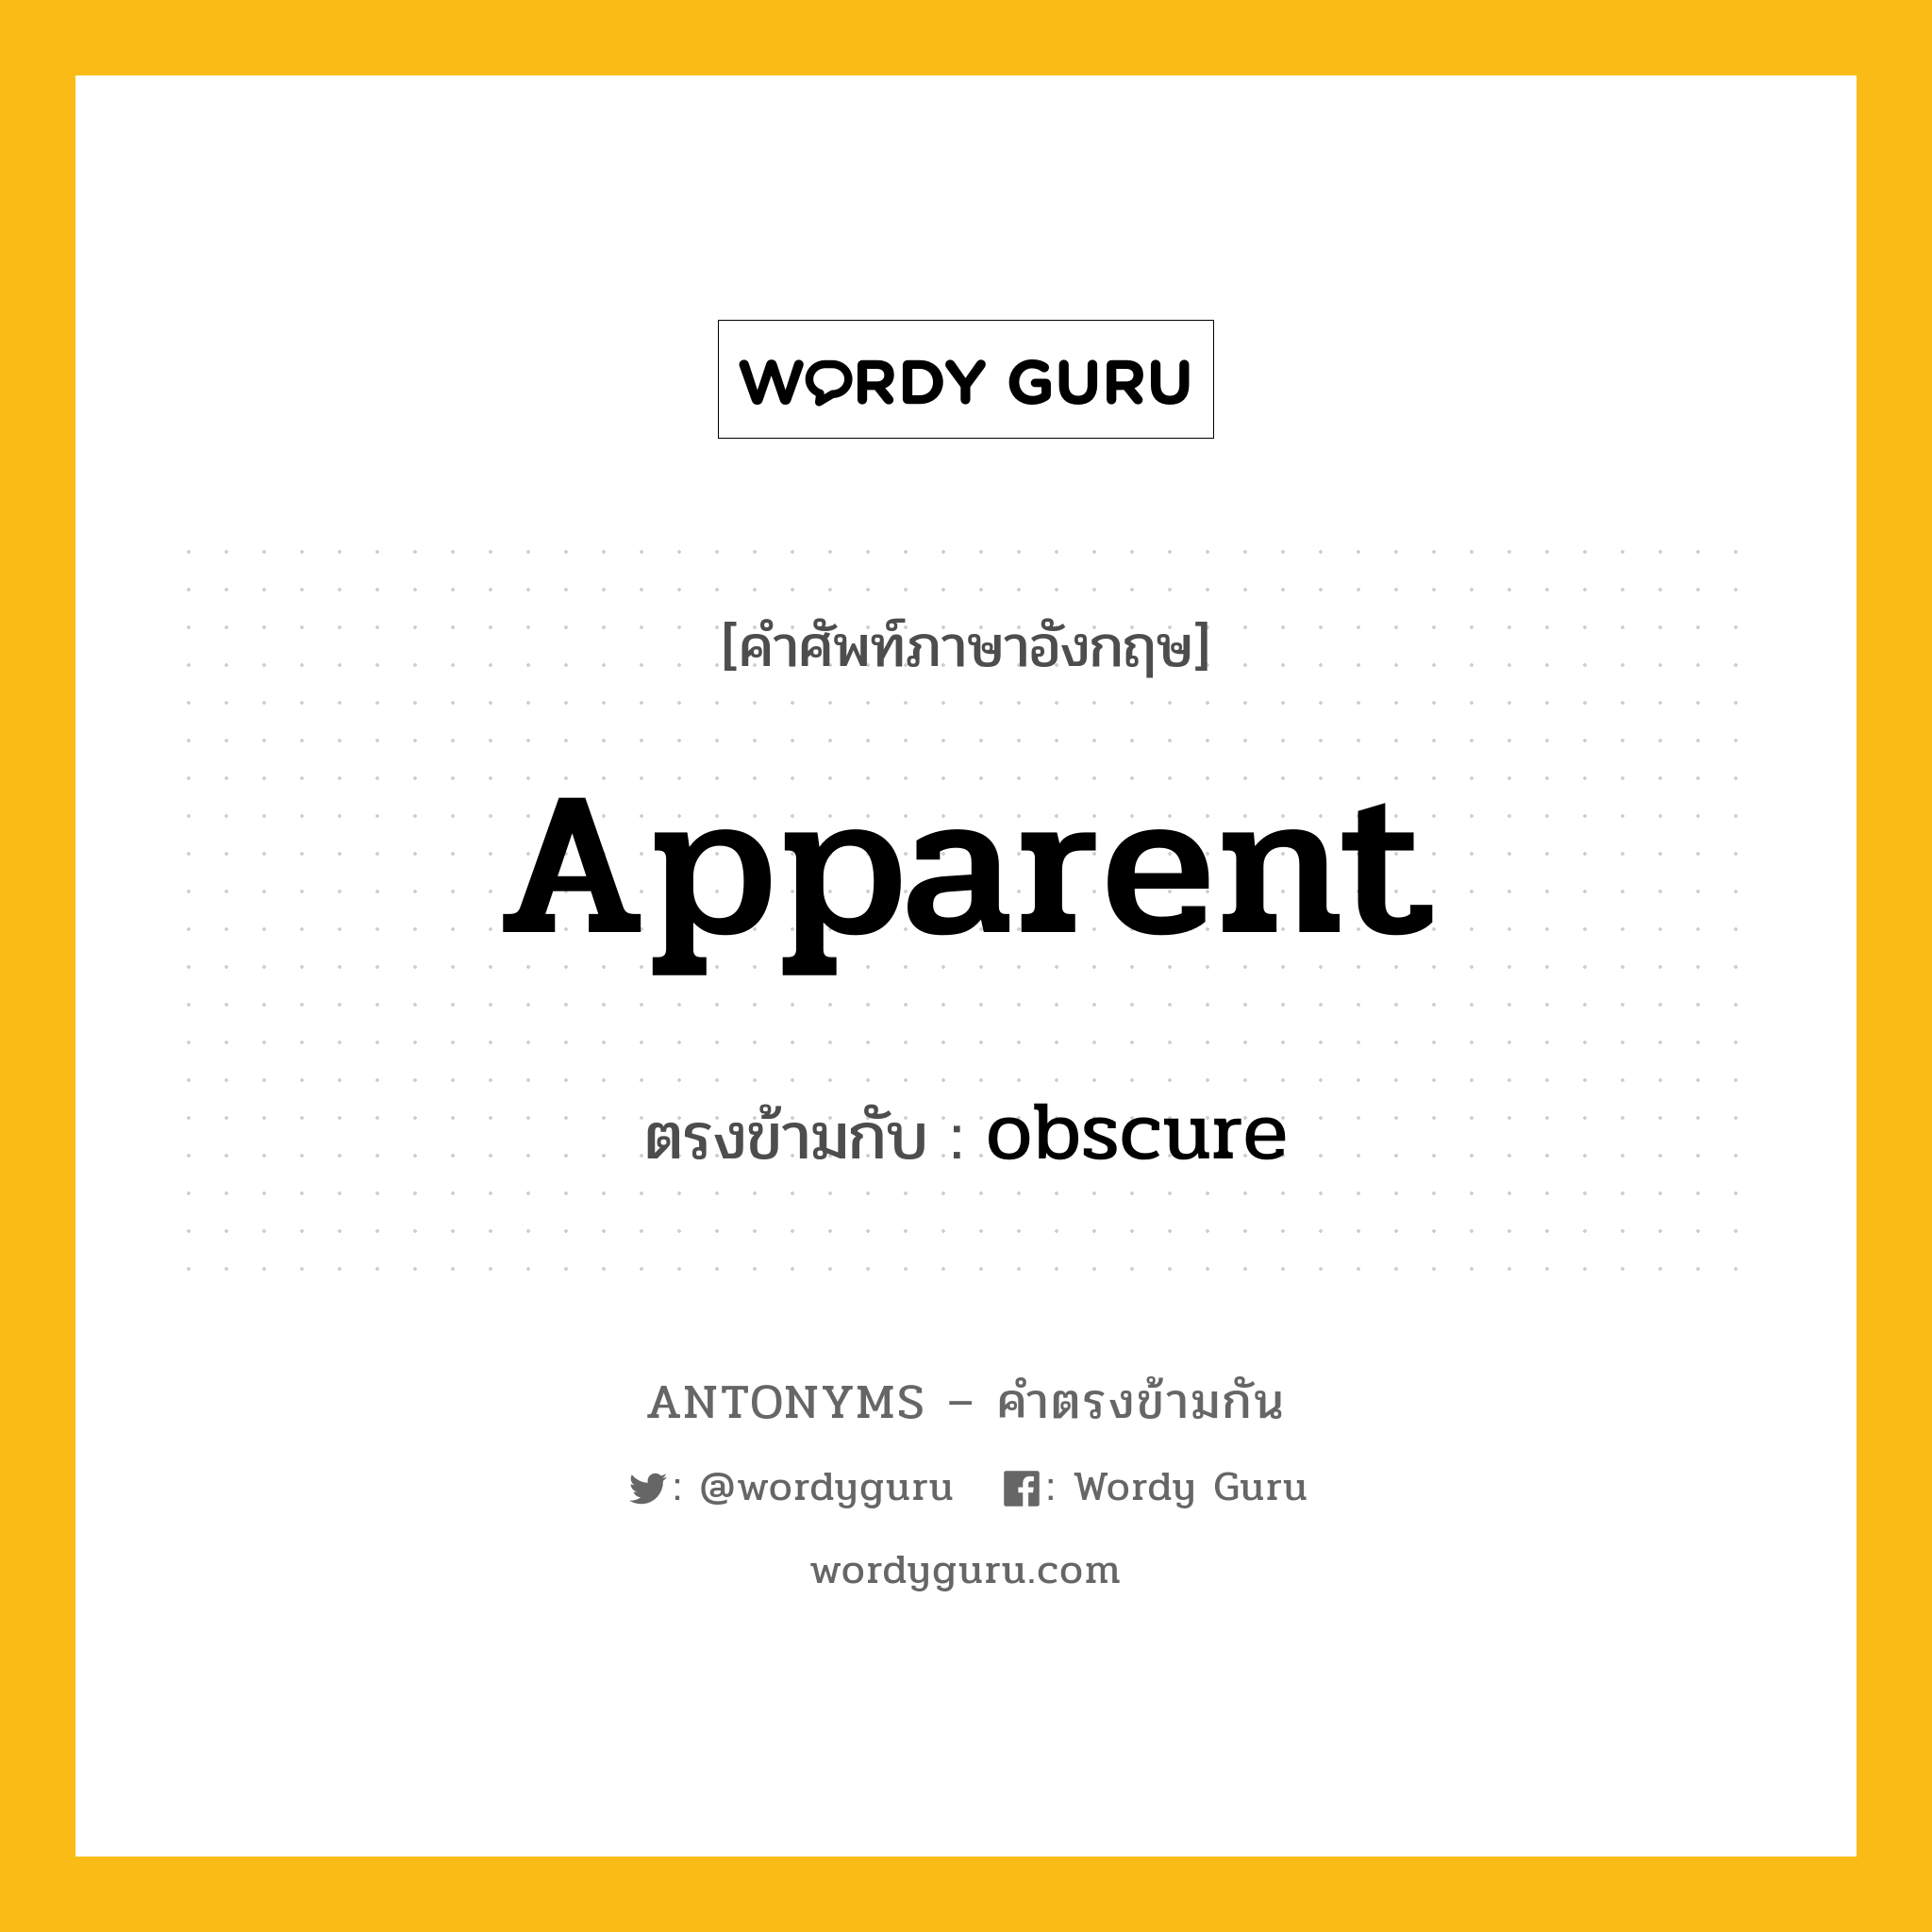 apparent เป็นคำตรงข้ามกับคำไหนบ้าง?, คำศัพท์ภาษาอังกฤษ apparent ตรงข้ามกับ obscure หมวด obscure